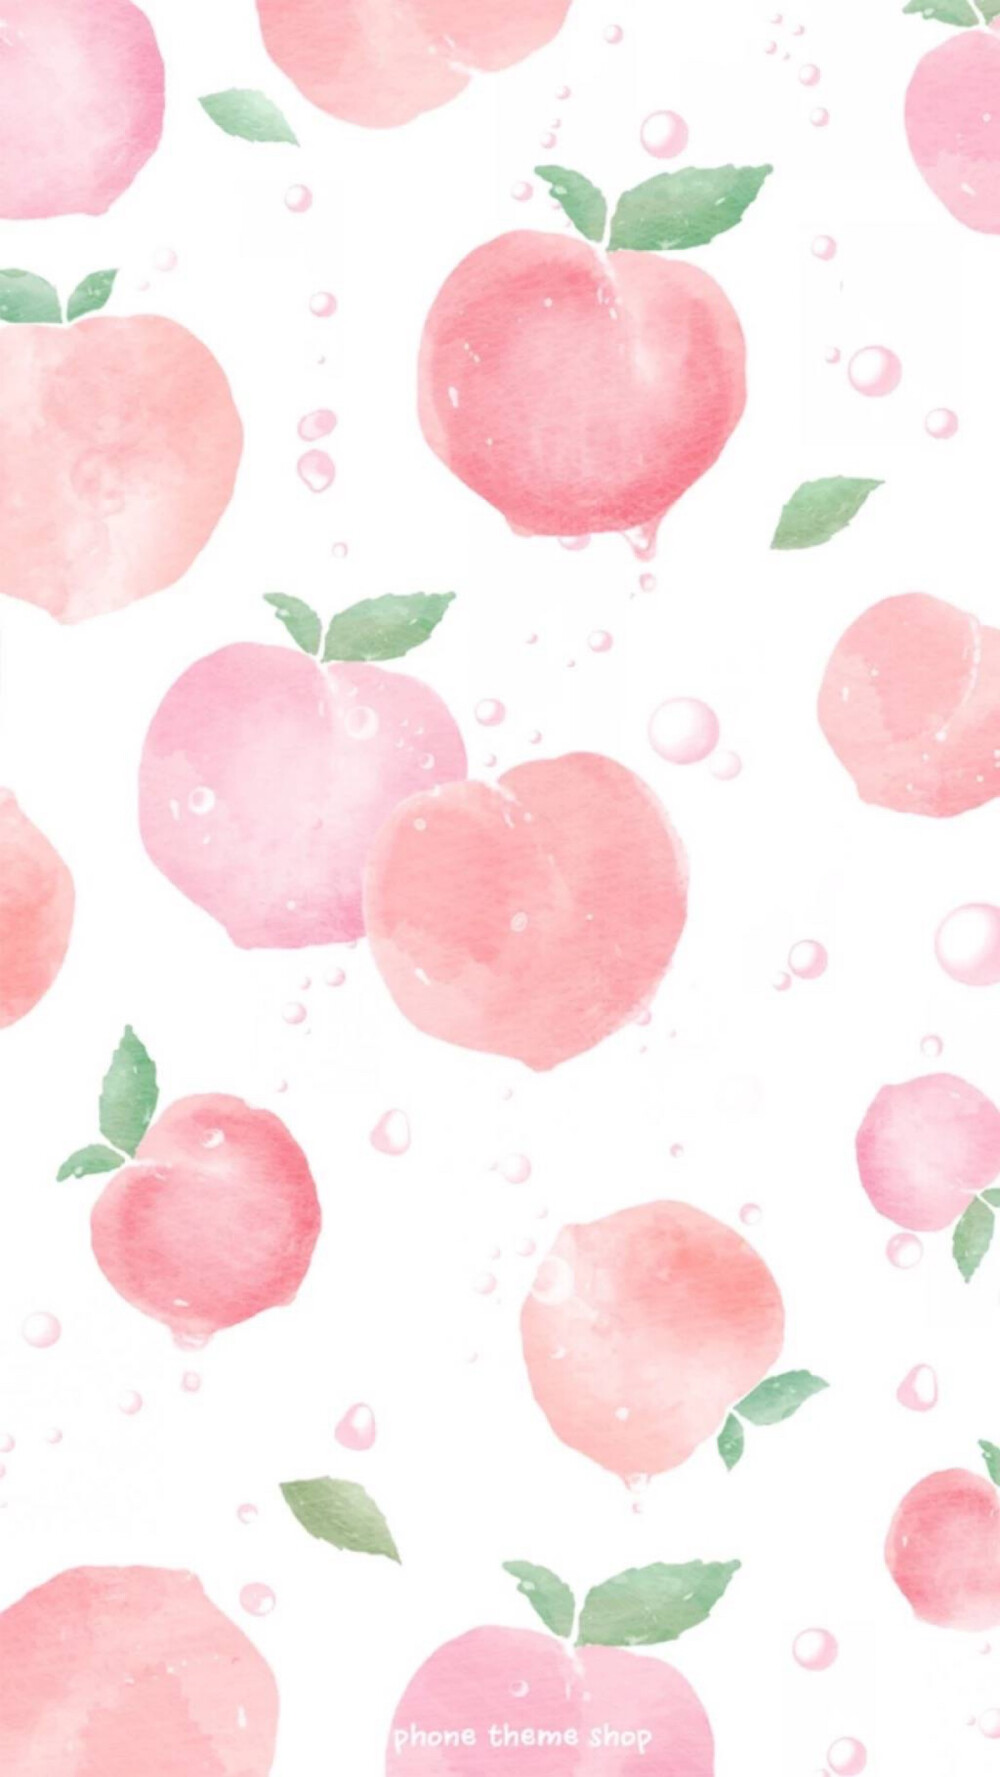 【dcherry丁樱桃】壁纸 夏天 水果 草莓 西瓜 水蜜桃 樱桃 平铺壁纸